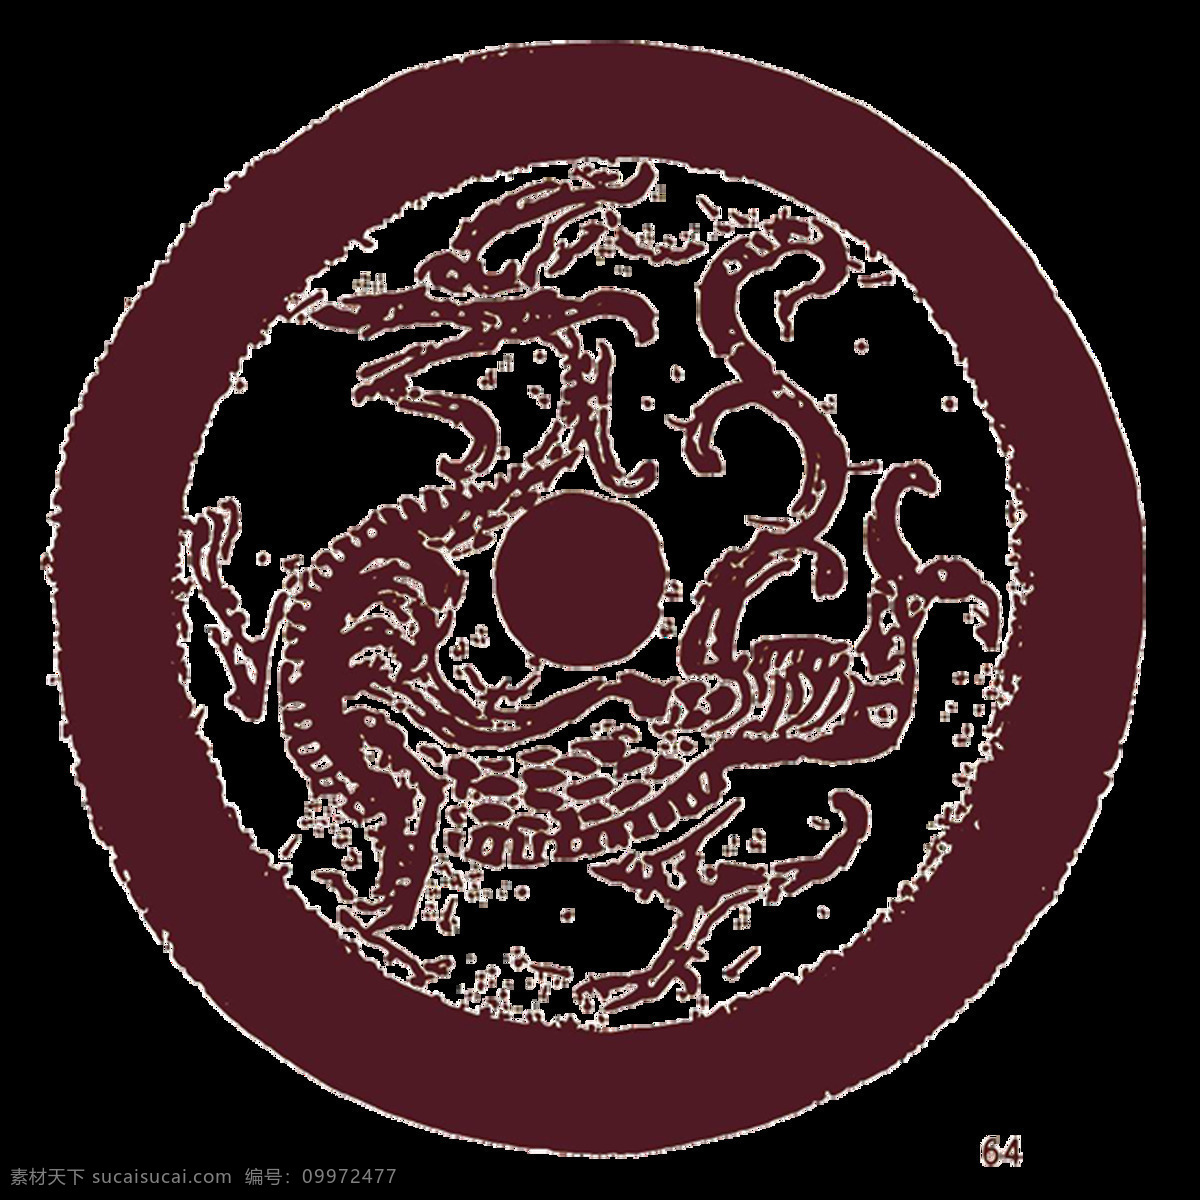 唯美 中国 古典 兽 型 创意 典雅 老虎图案 生动 形象